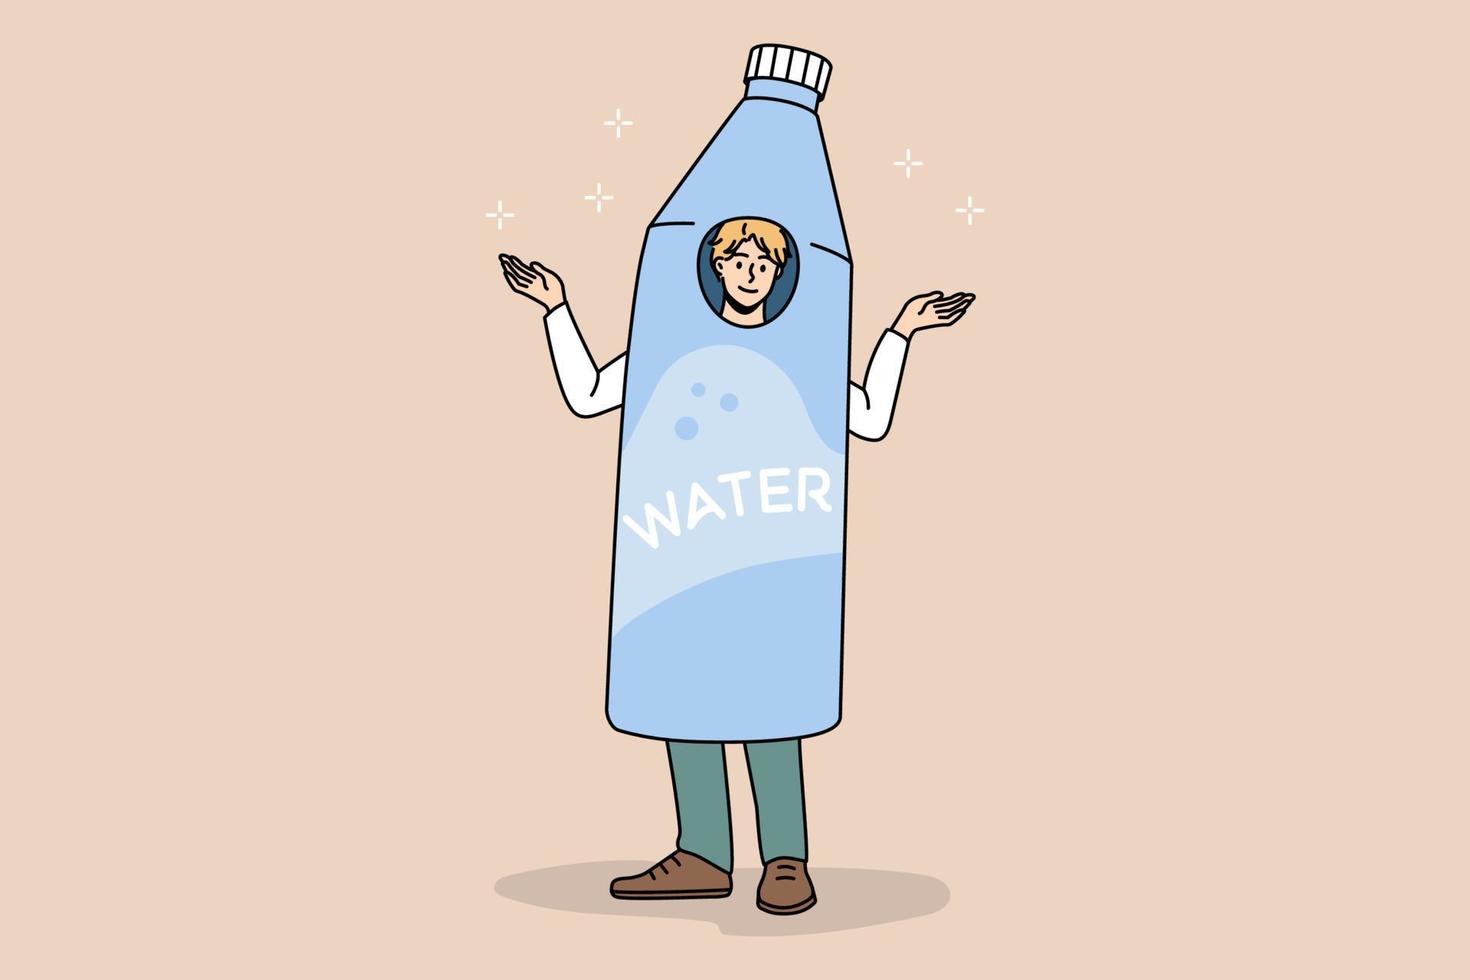 Ein lächelnder Mann in einer Wasserflasche wirbt für einen gesunden Lebensstil. glücklicher mann im kostüm in der mineralwasserwerbung. Anzeige, Körpererfrischung, Trinkkonzept. Vektor-Illustration. vektor